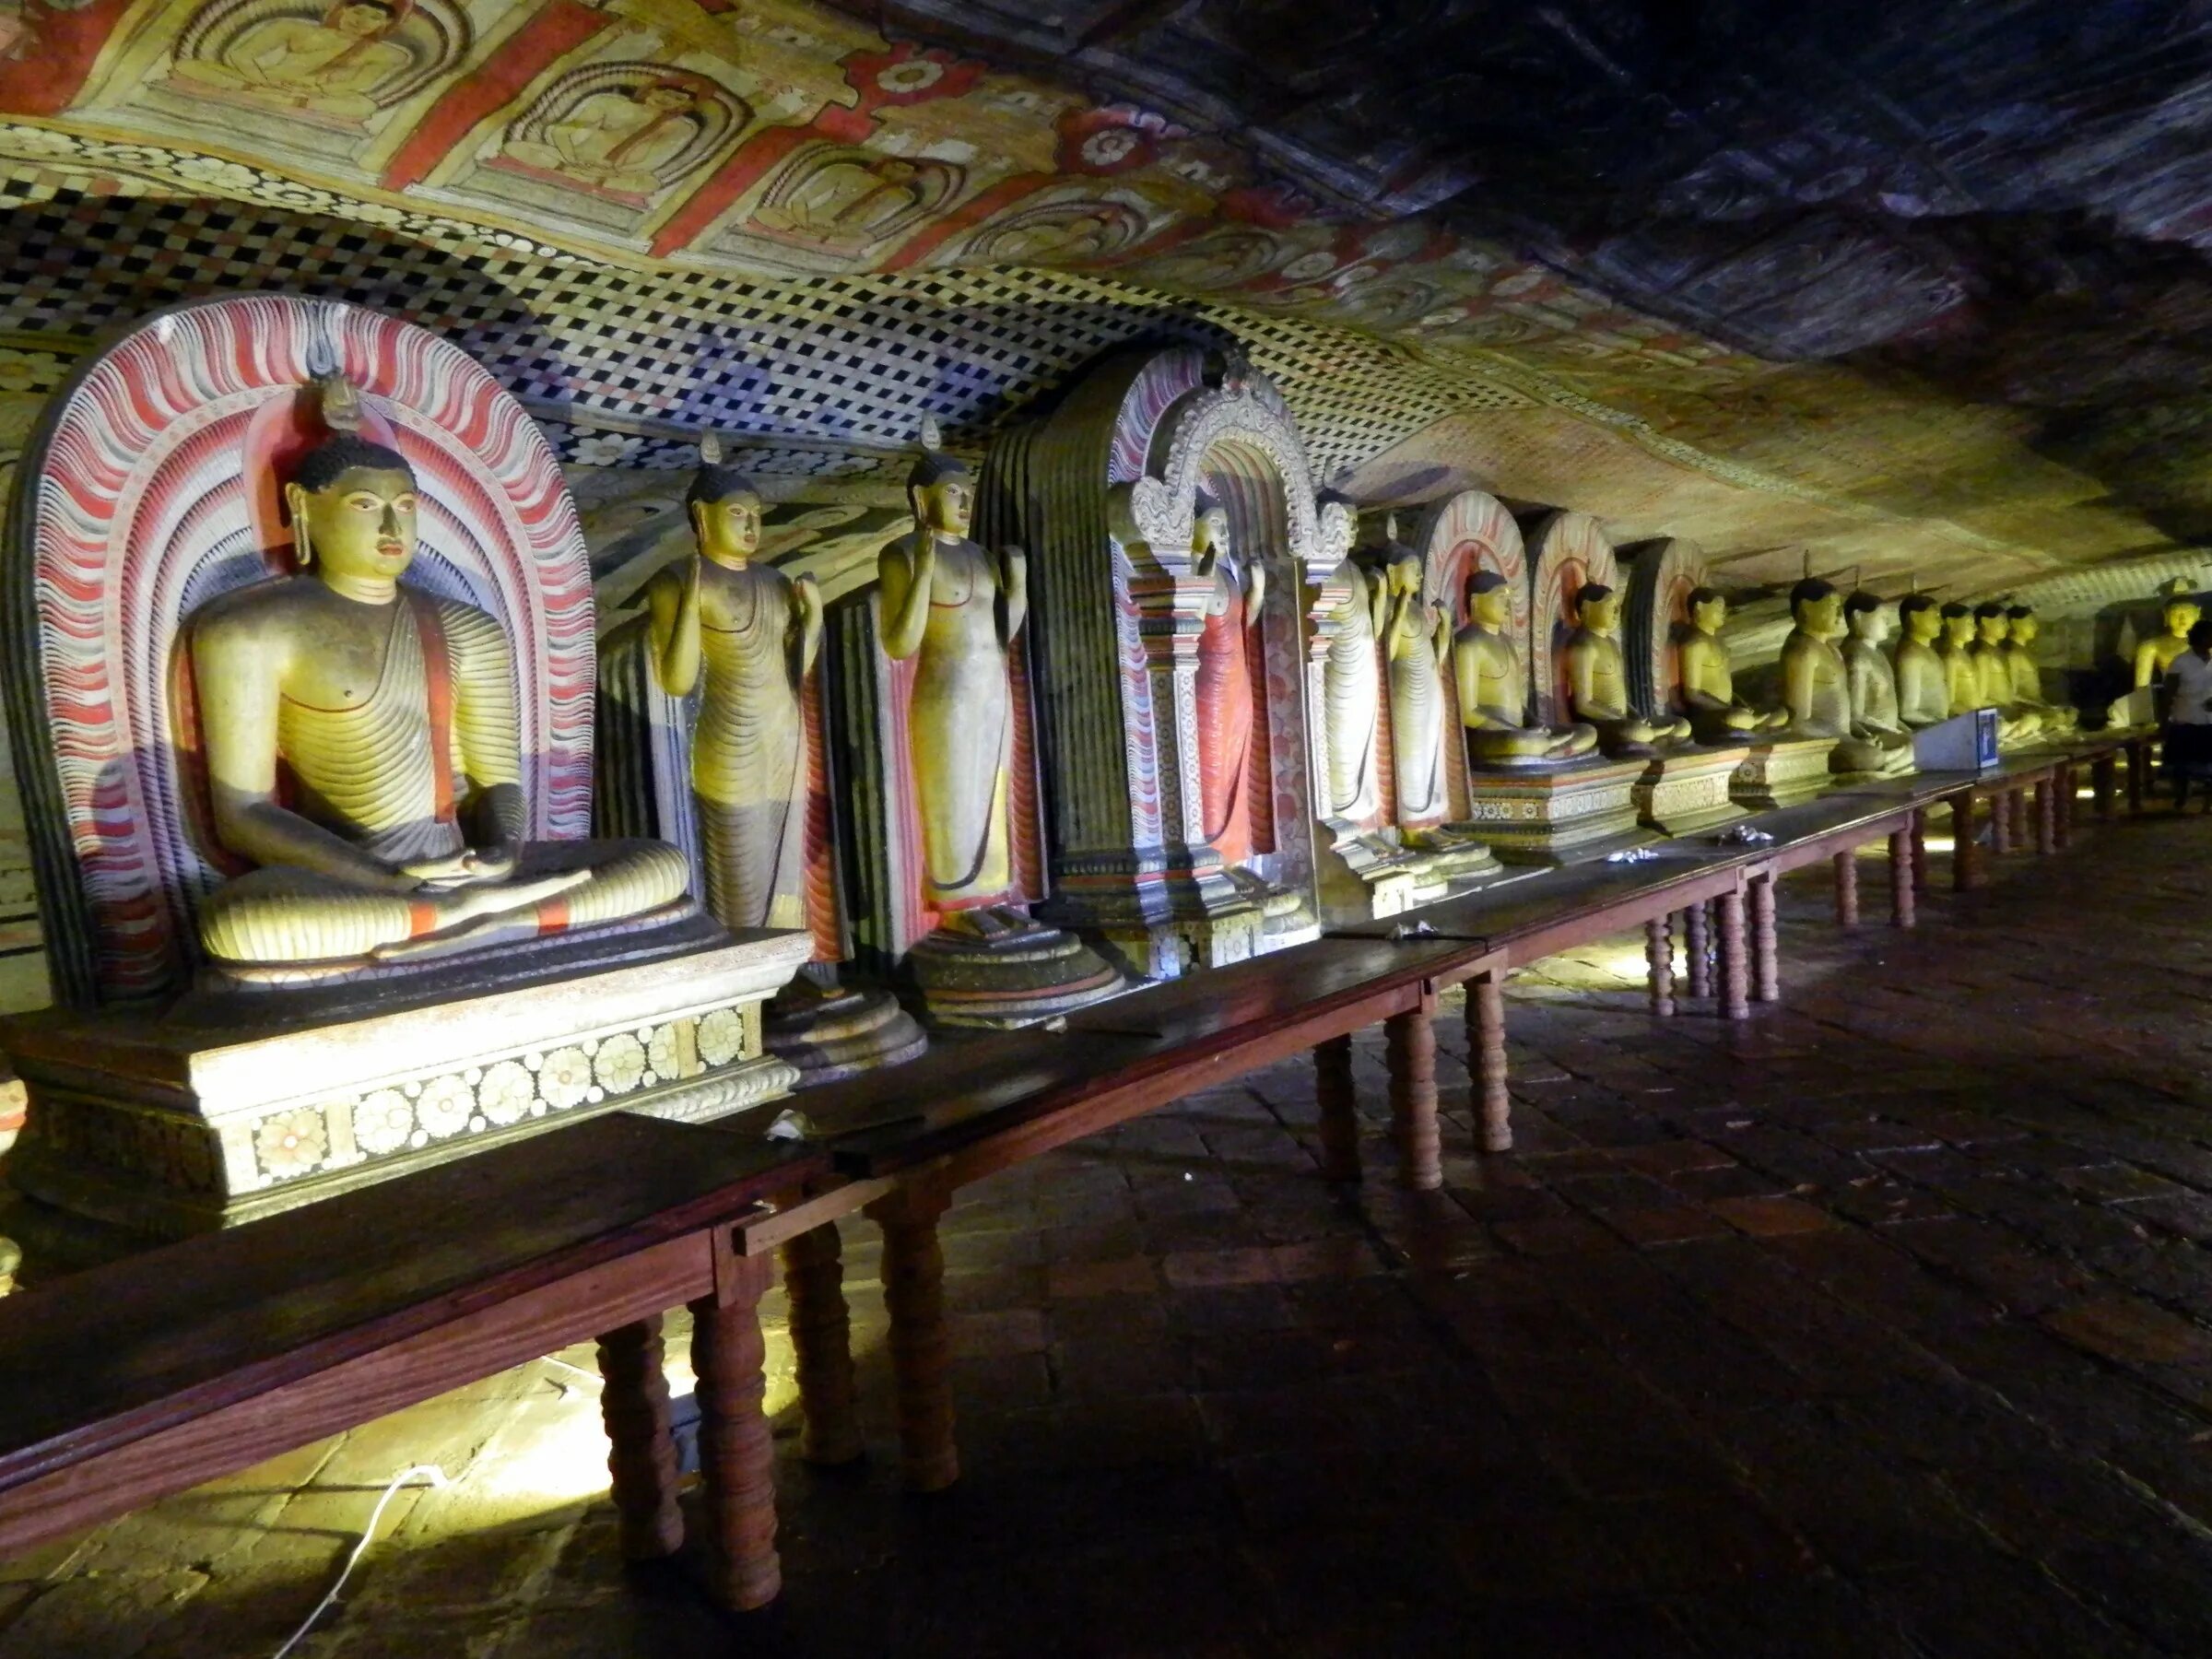 Храм Дамбулла Шри-Ланка. Пещерный храм Дамбулла. Пещерный храм Дамбулла Шри-Ланка. Золотой храм Дамбулла в Шри-Ланке.